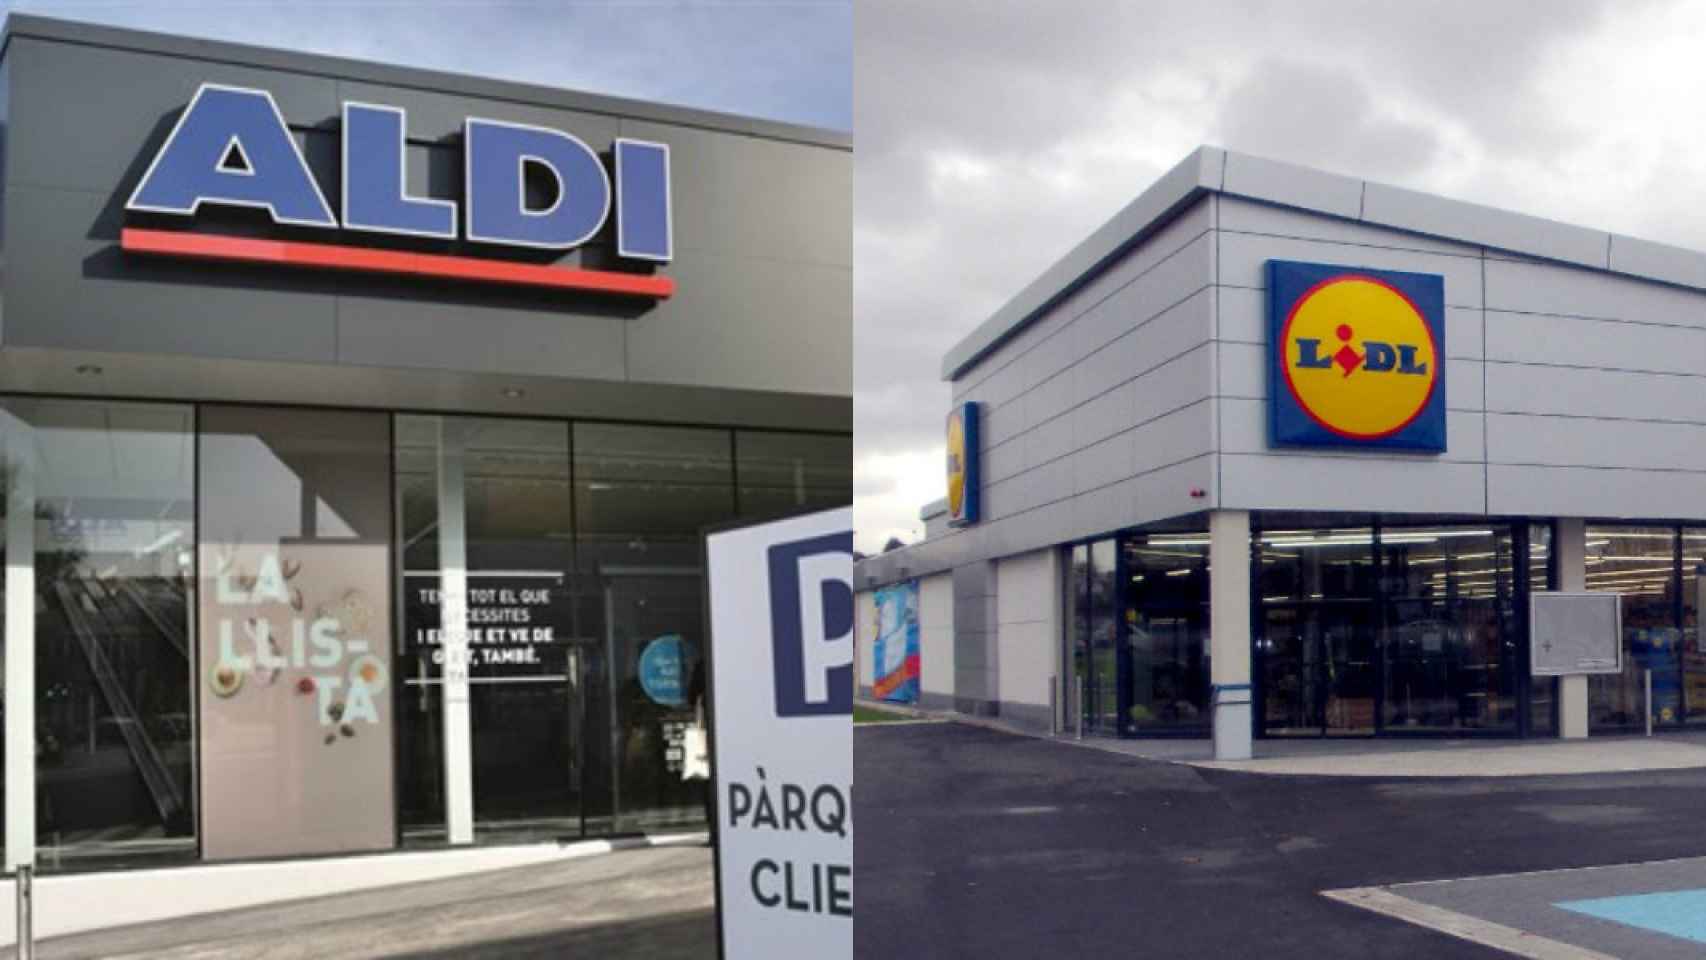 Fotos de archivo de dos supermercados Aldi y Lidl.